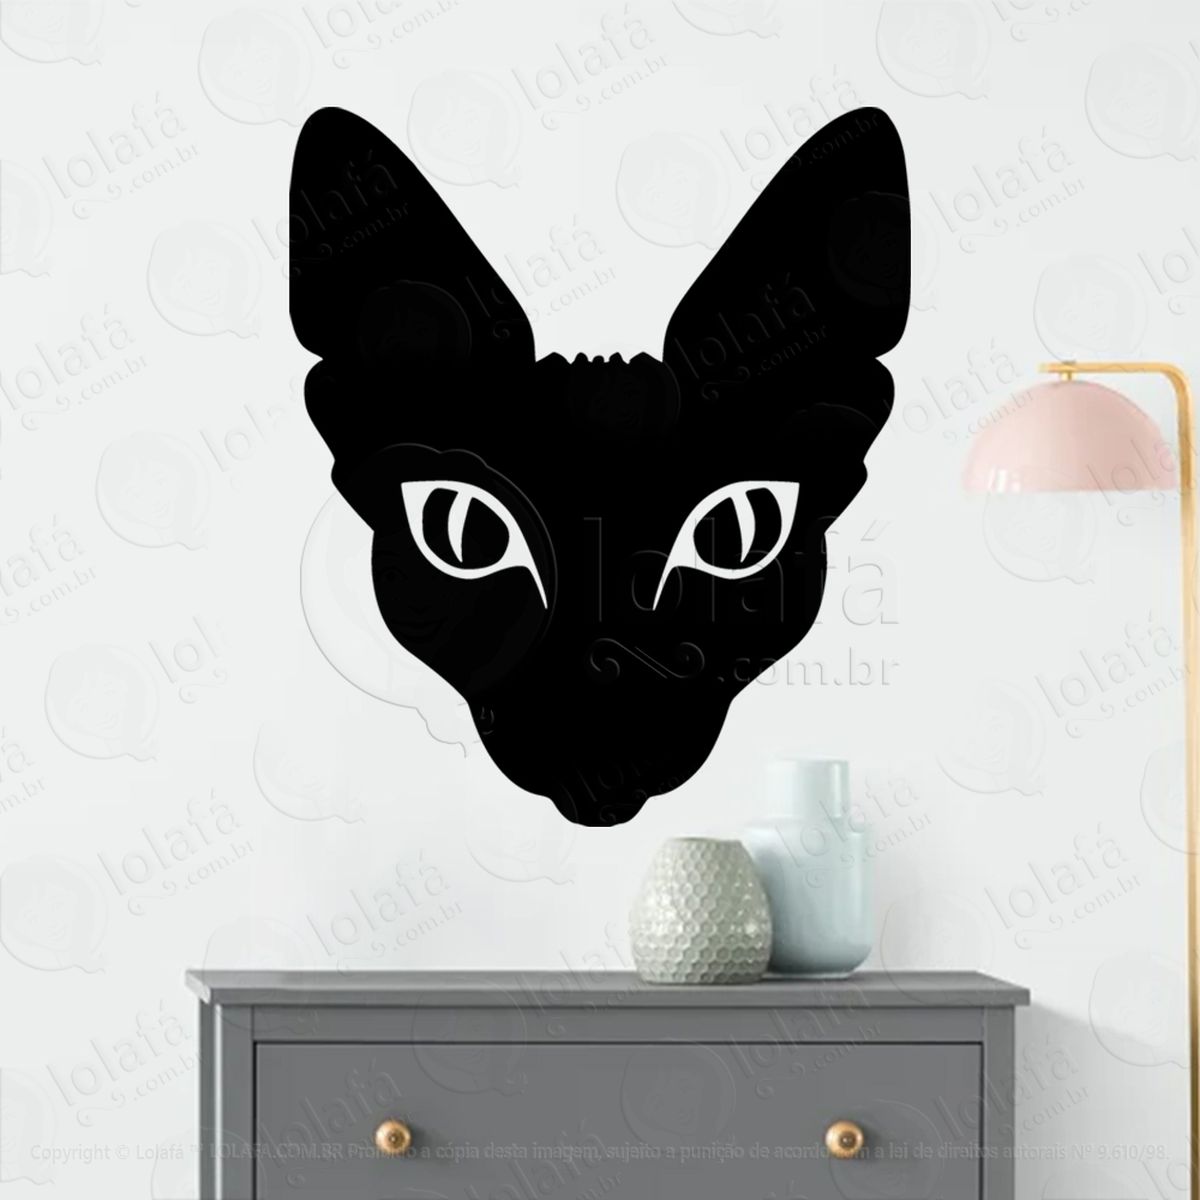 gato esfinge sphinx cat adesivo de parede decorativo para casa, sala, quarto, vidro e altar ocultista - mod:272